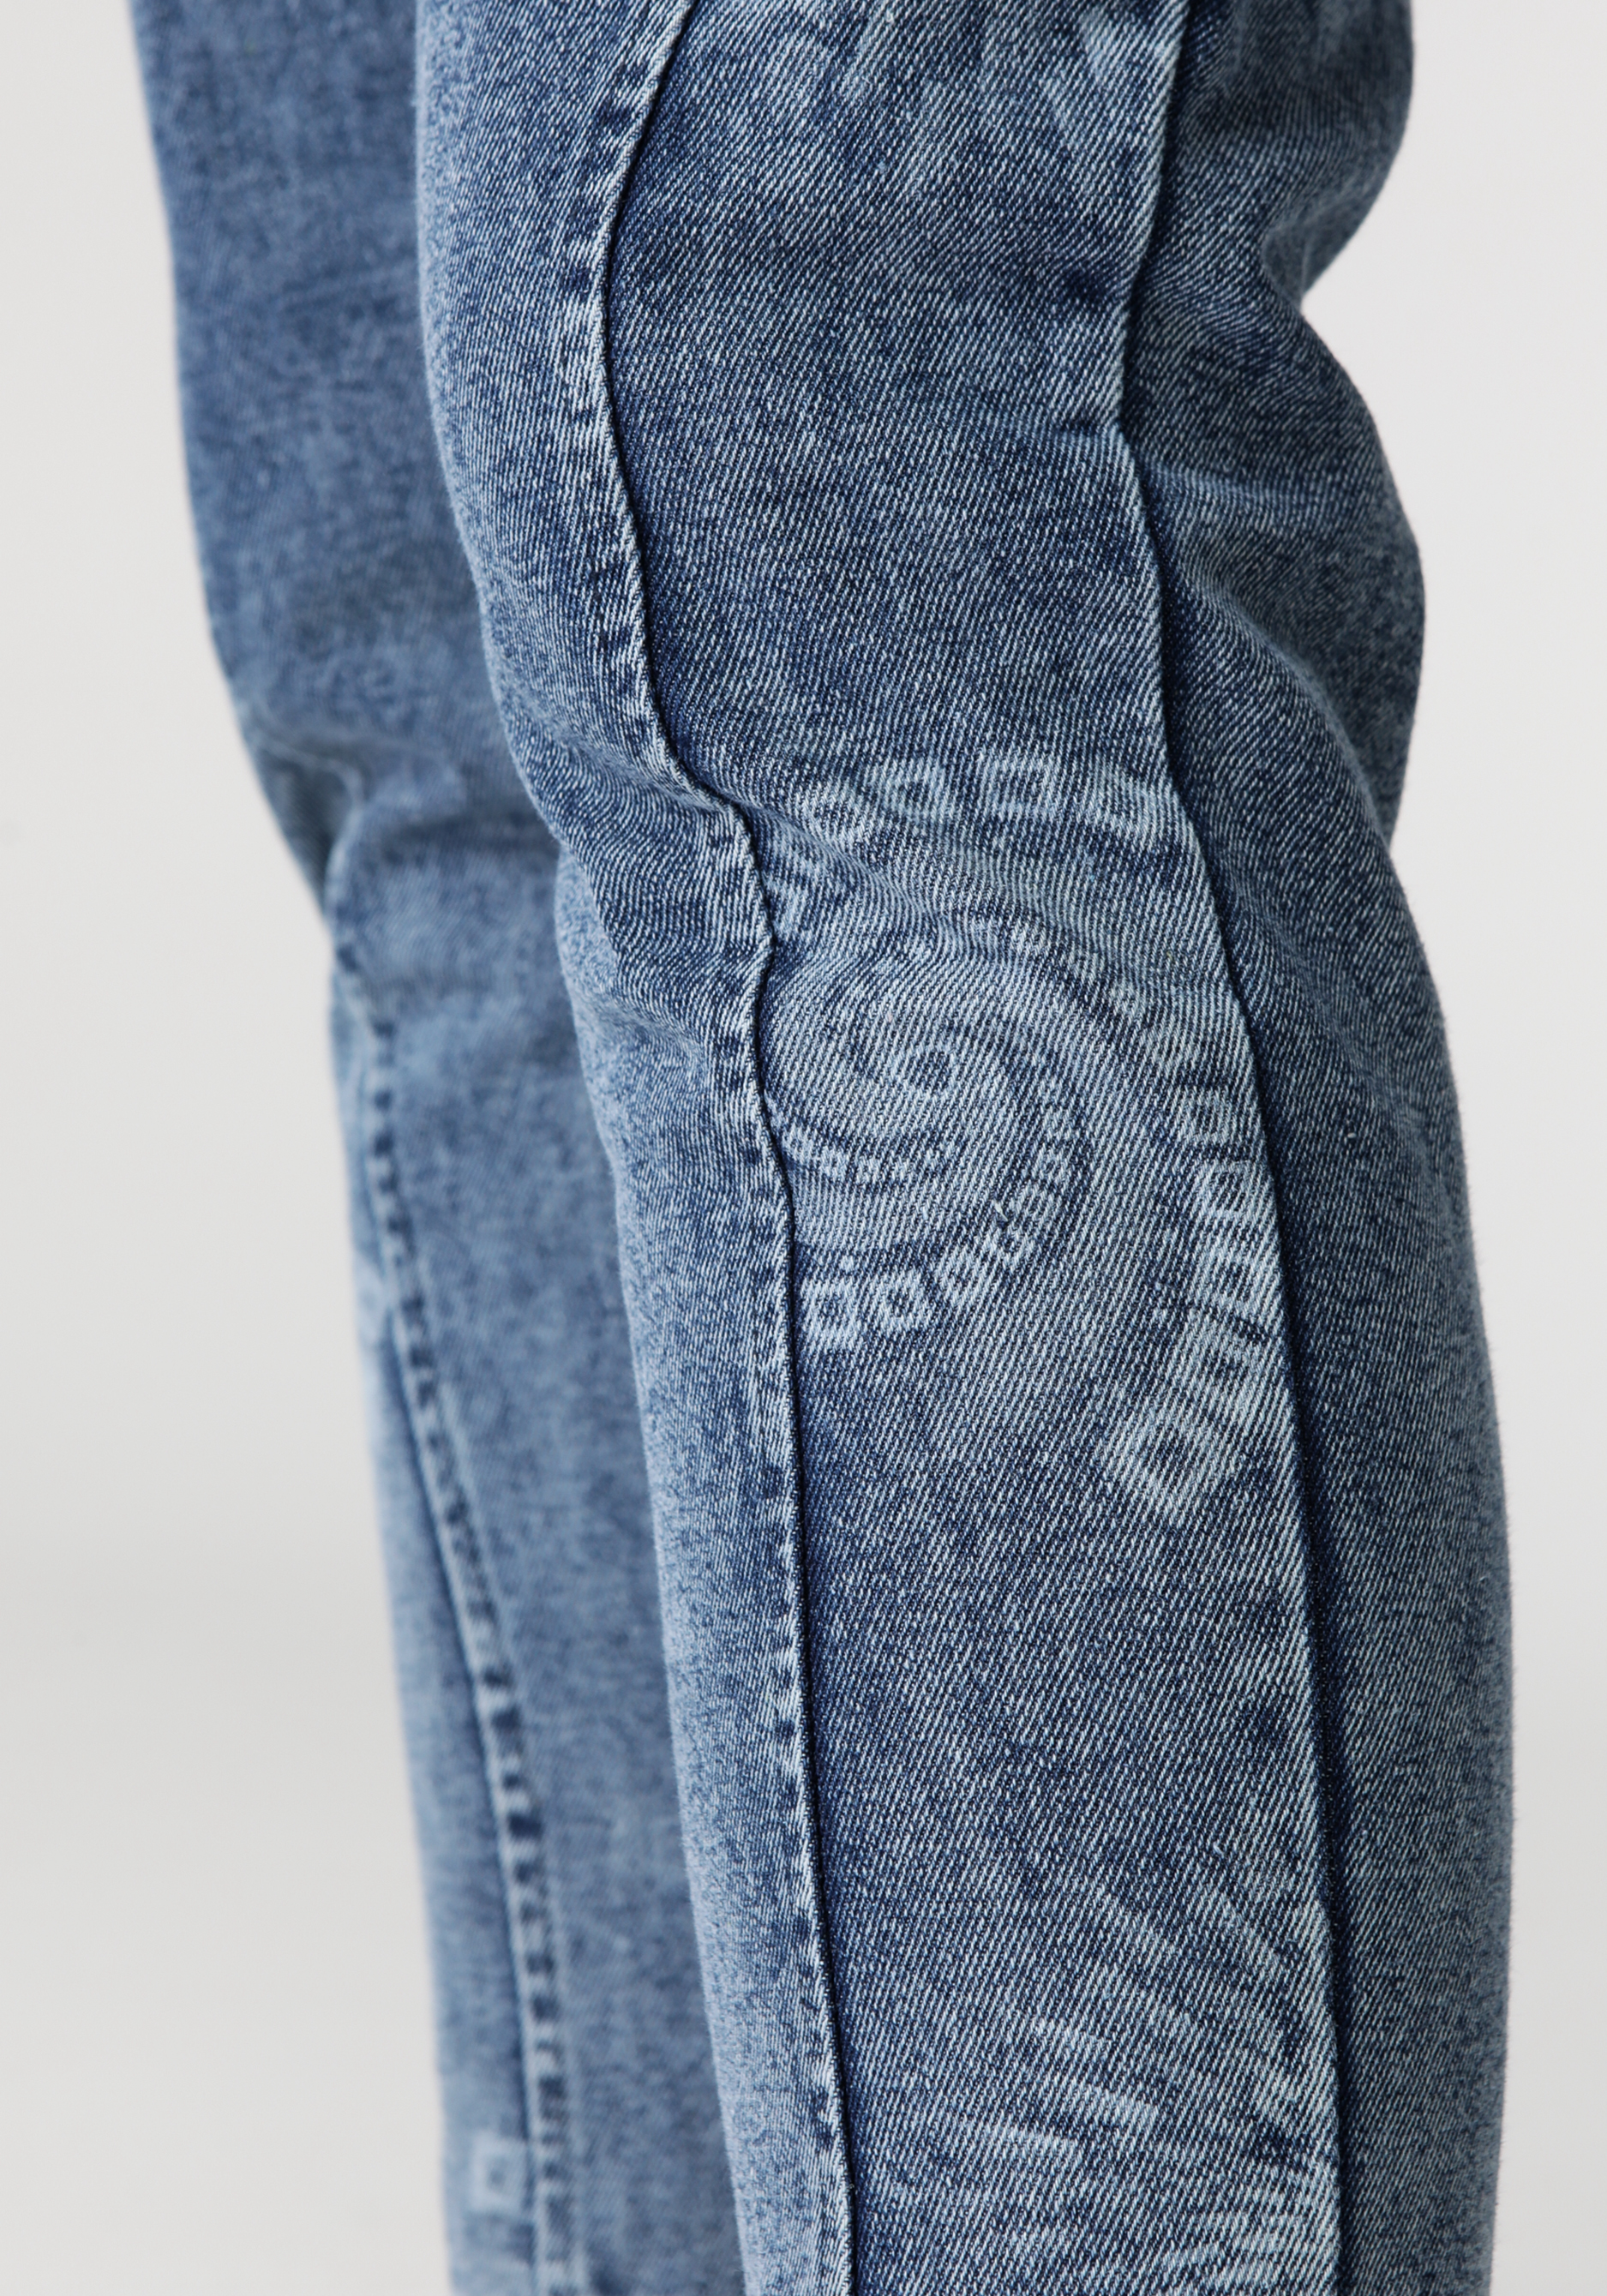 Джинсы на резинке с карманами и принтом, размер 54, цвет синий - фото 5